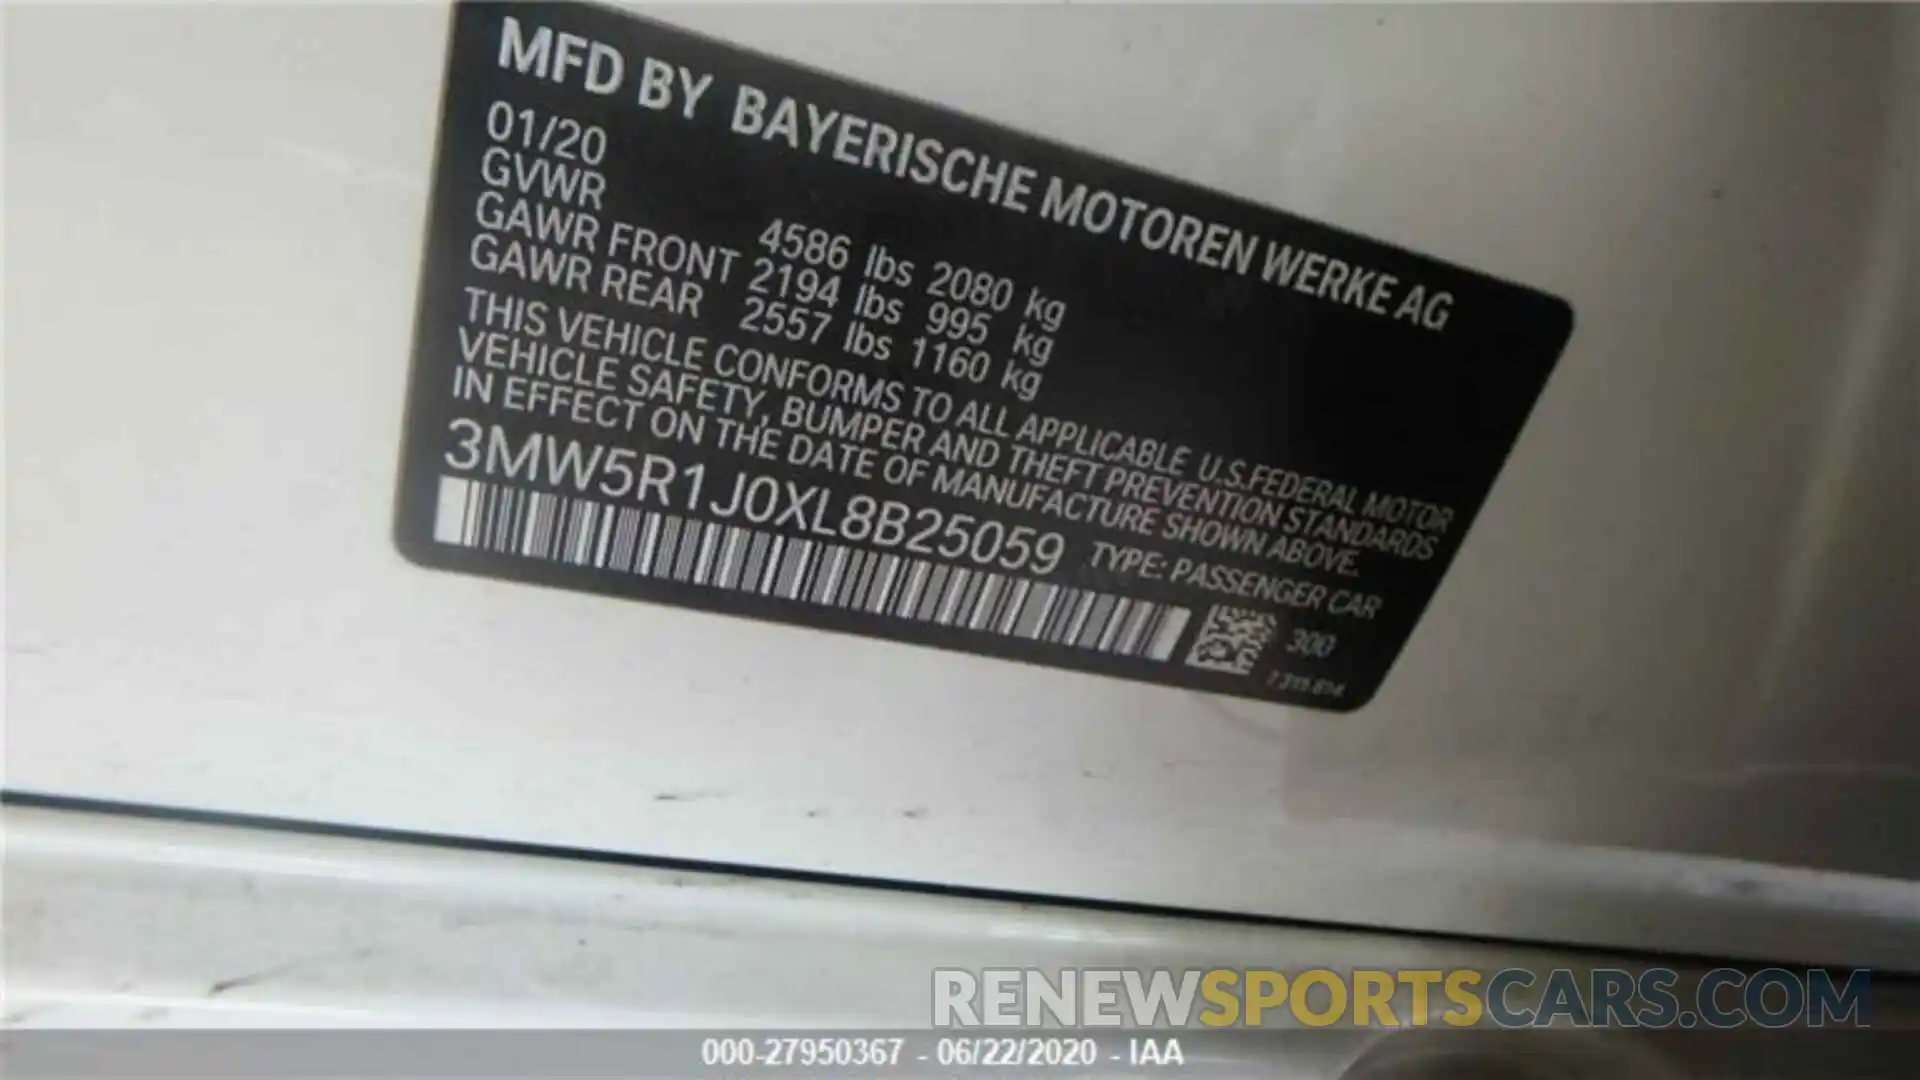 1 Photograph of a damaged car 3MW5R1J0XL8B25059 BMW 330I 2020